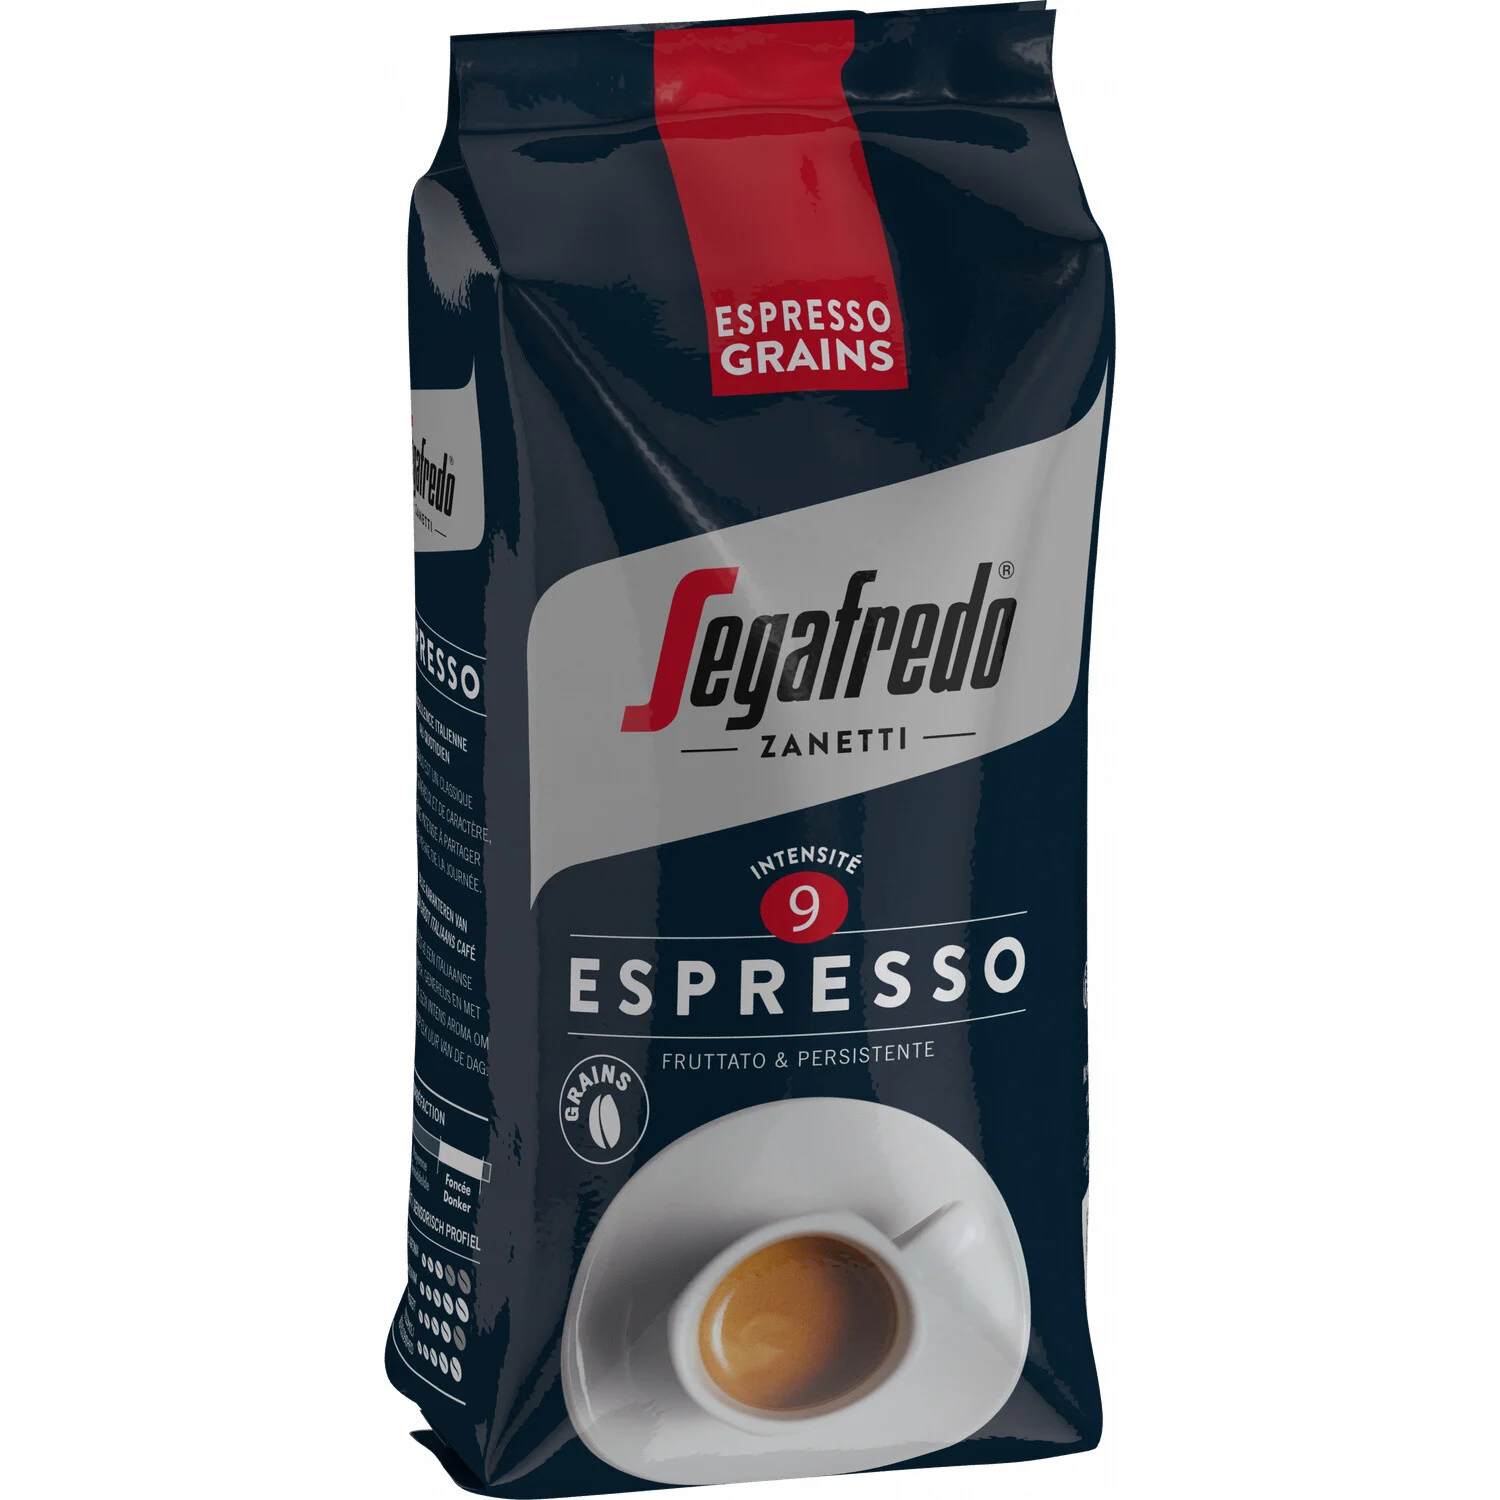 1kg Grain Segafredo Espresso